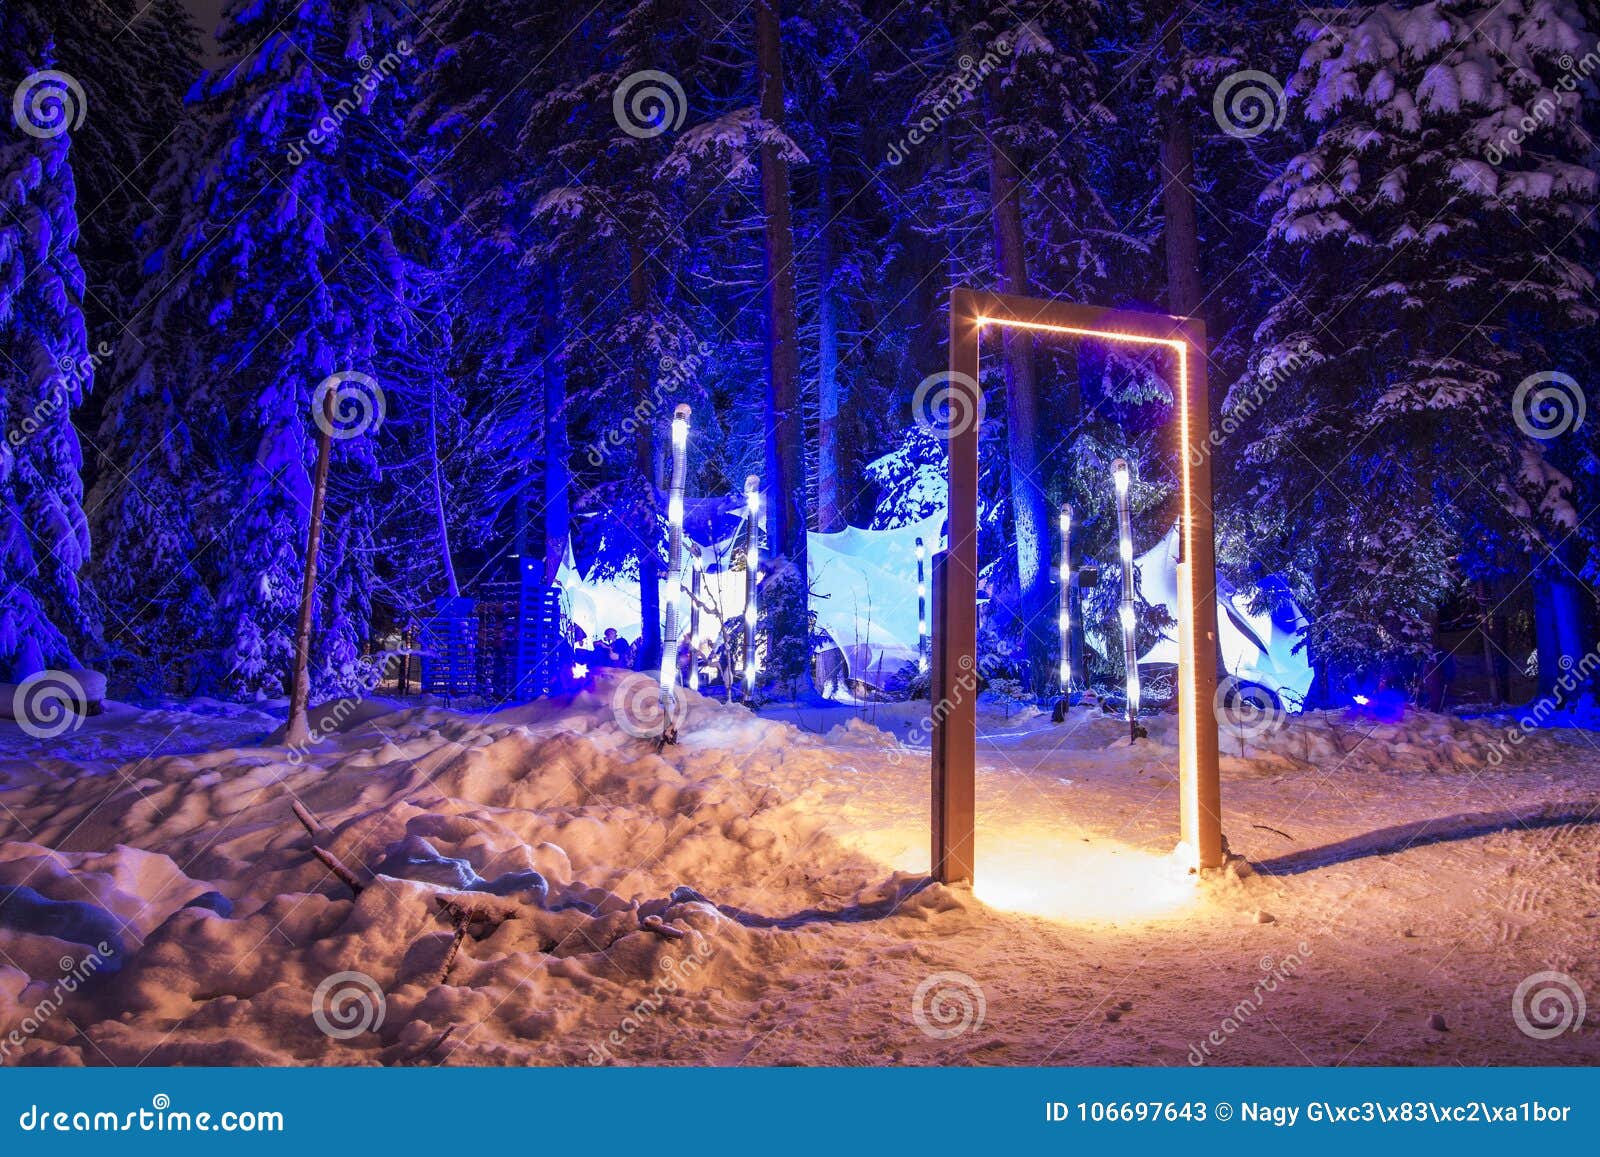 mysterious forest in lenzerheide, switzerlnad.light show in winter landscape